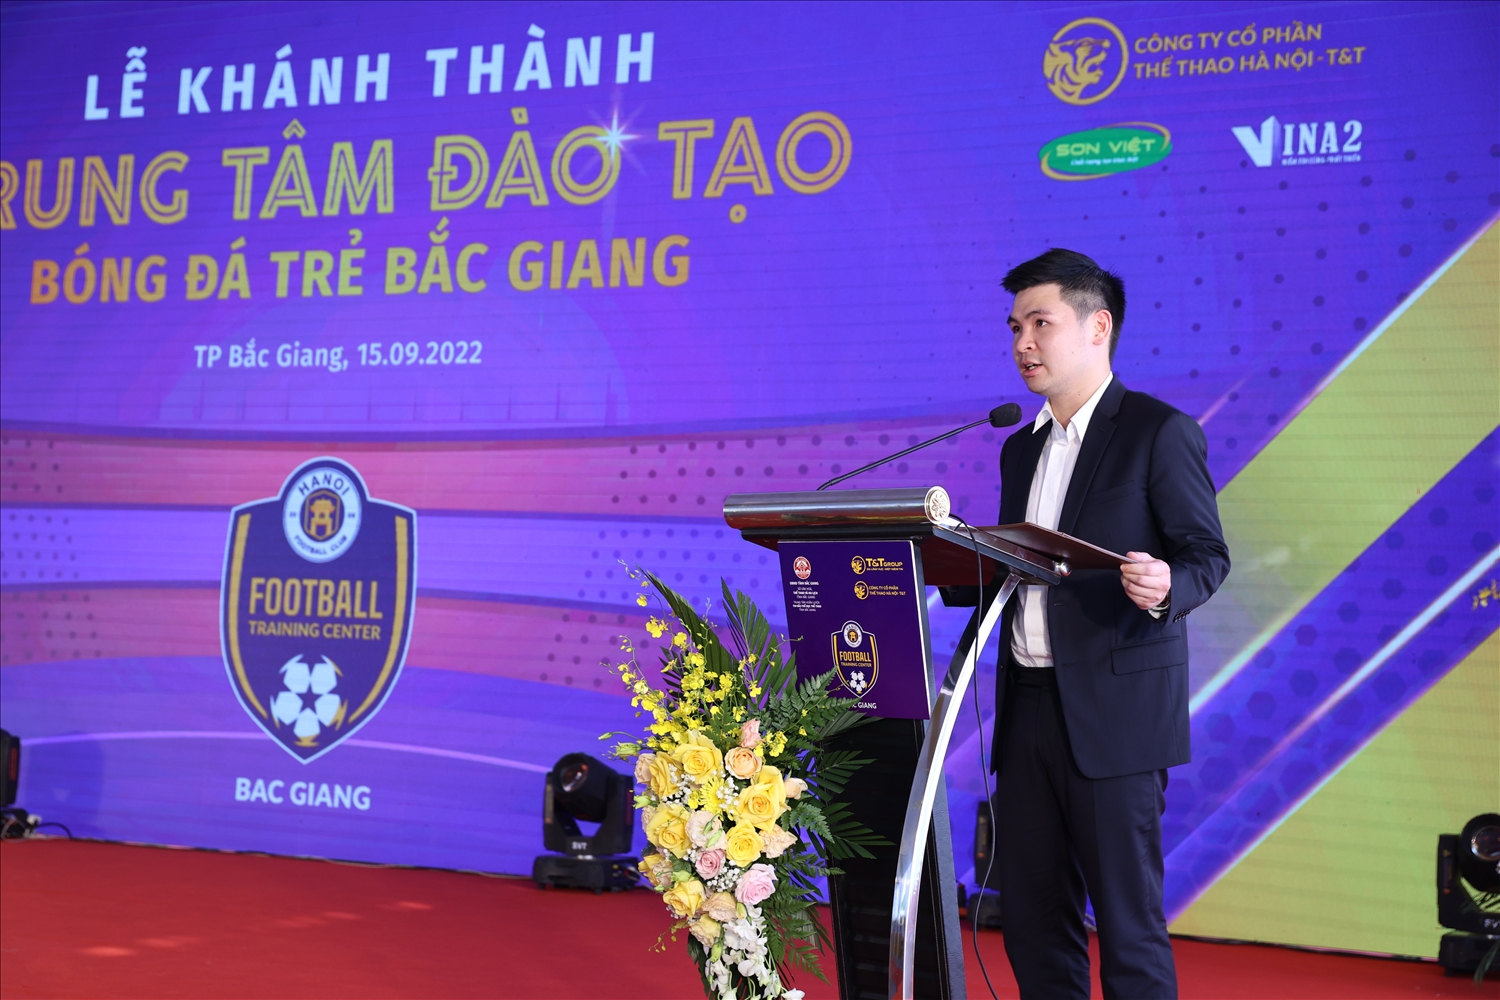 Ông Đỗ Vinh Quang - Phó Chủ tịch HĐQT, Phó Tổng Giám đốc Tập đoàn T&T Group, Chủ tịch CLB bóng đá Hà Nội phát biểu tại Lễ khánh thành Trung tâm Đào tạo bóng đá trẻ Bắc Giang